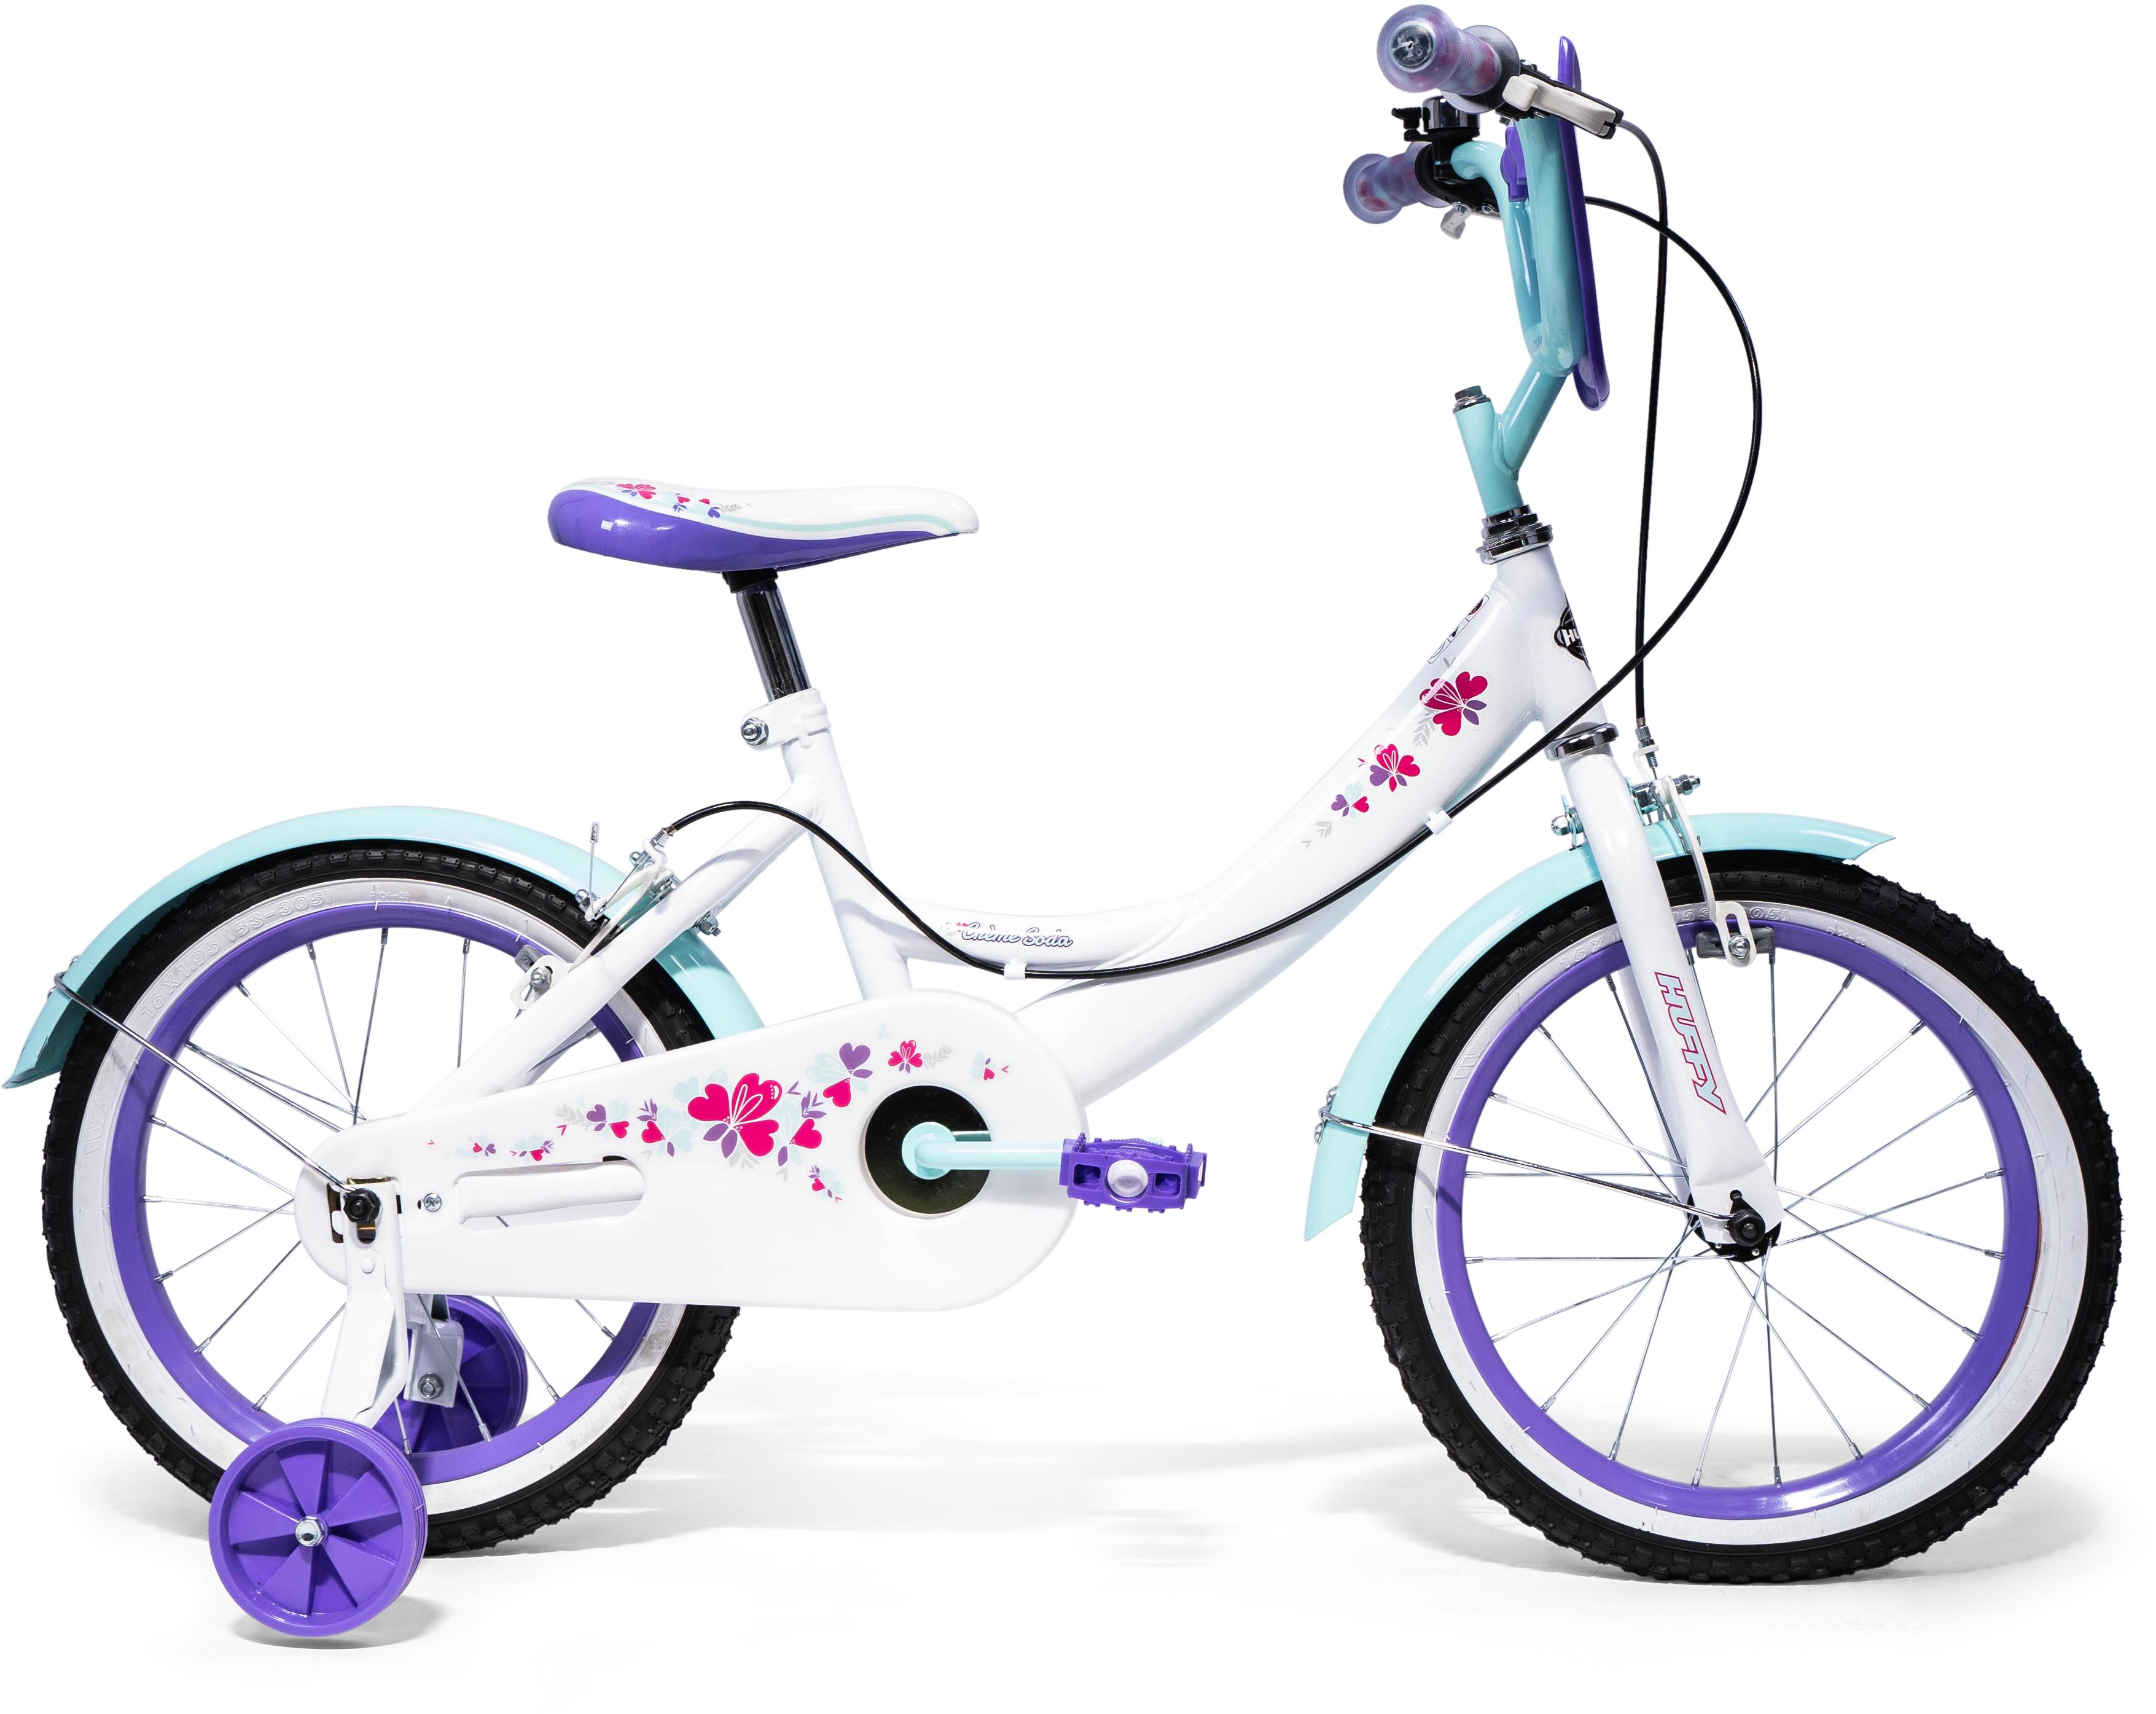 Huffy Crme Soda Kids Bike - 16 Inch Wheel